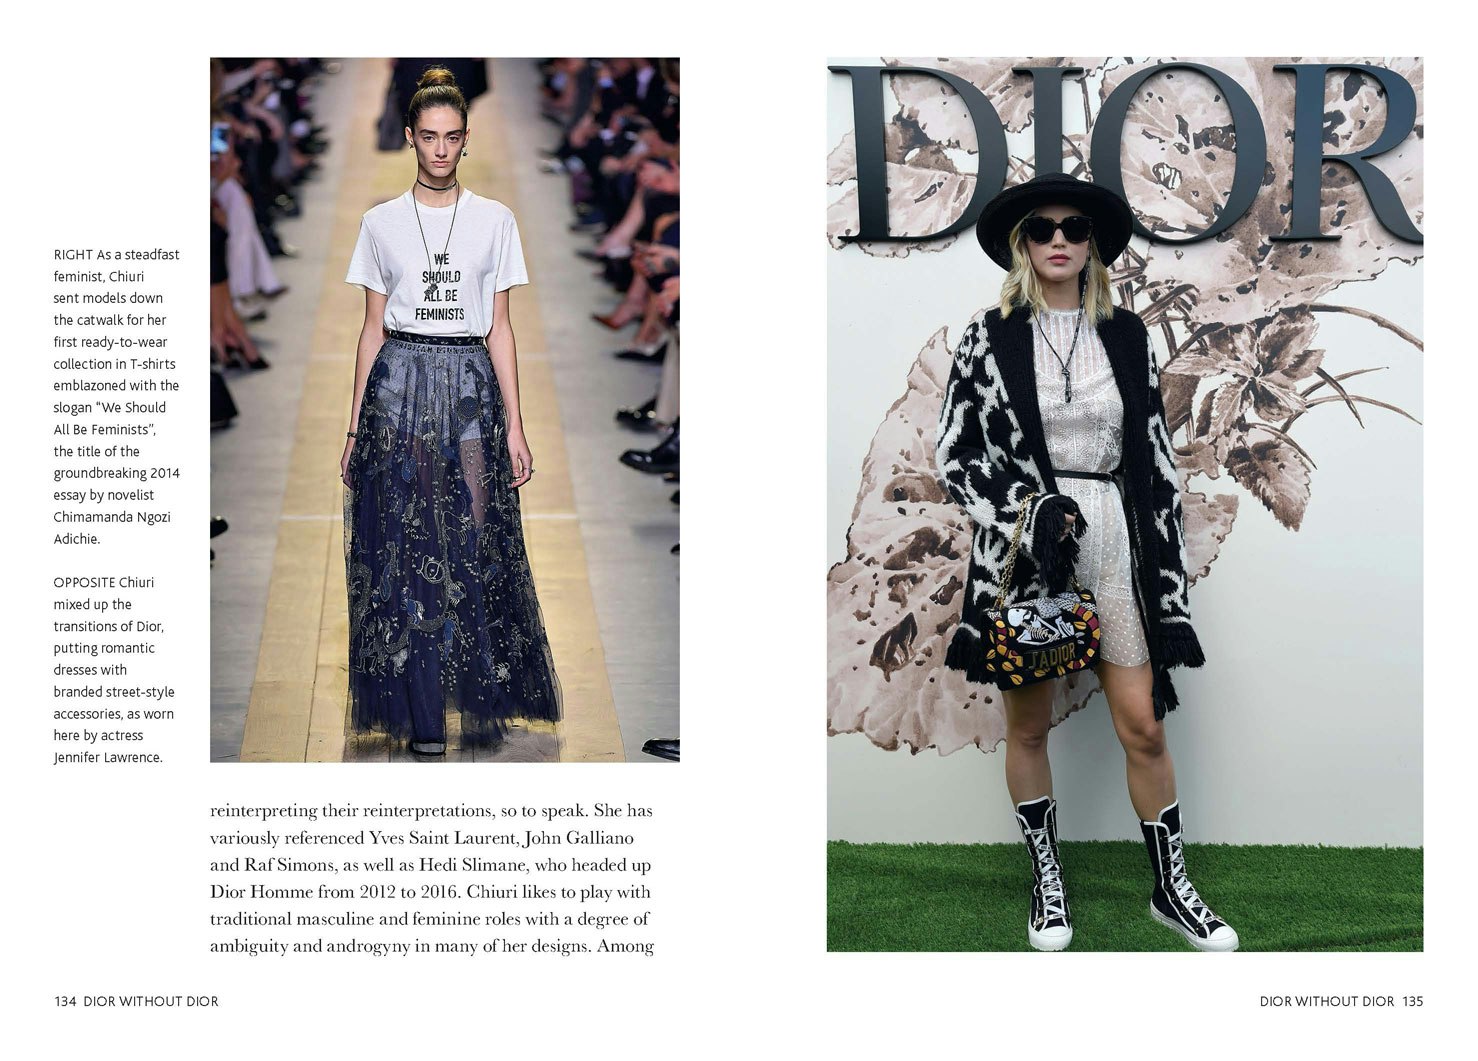 Book: Dior Catwalk